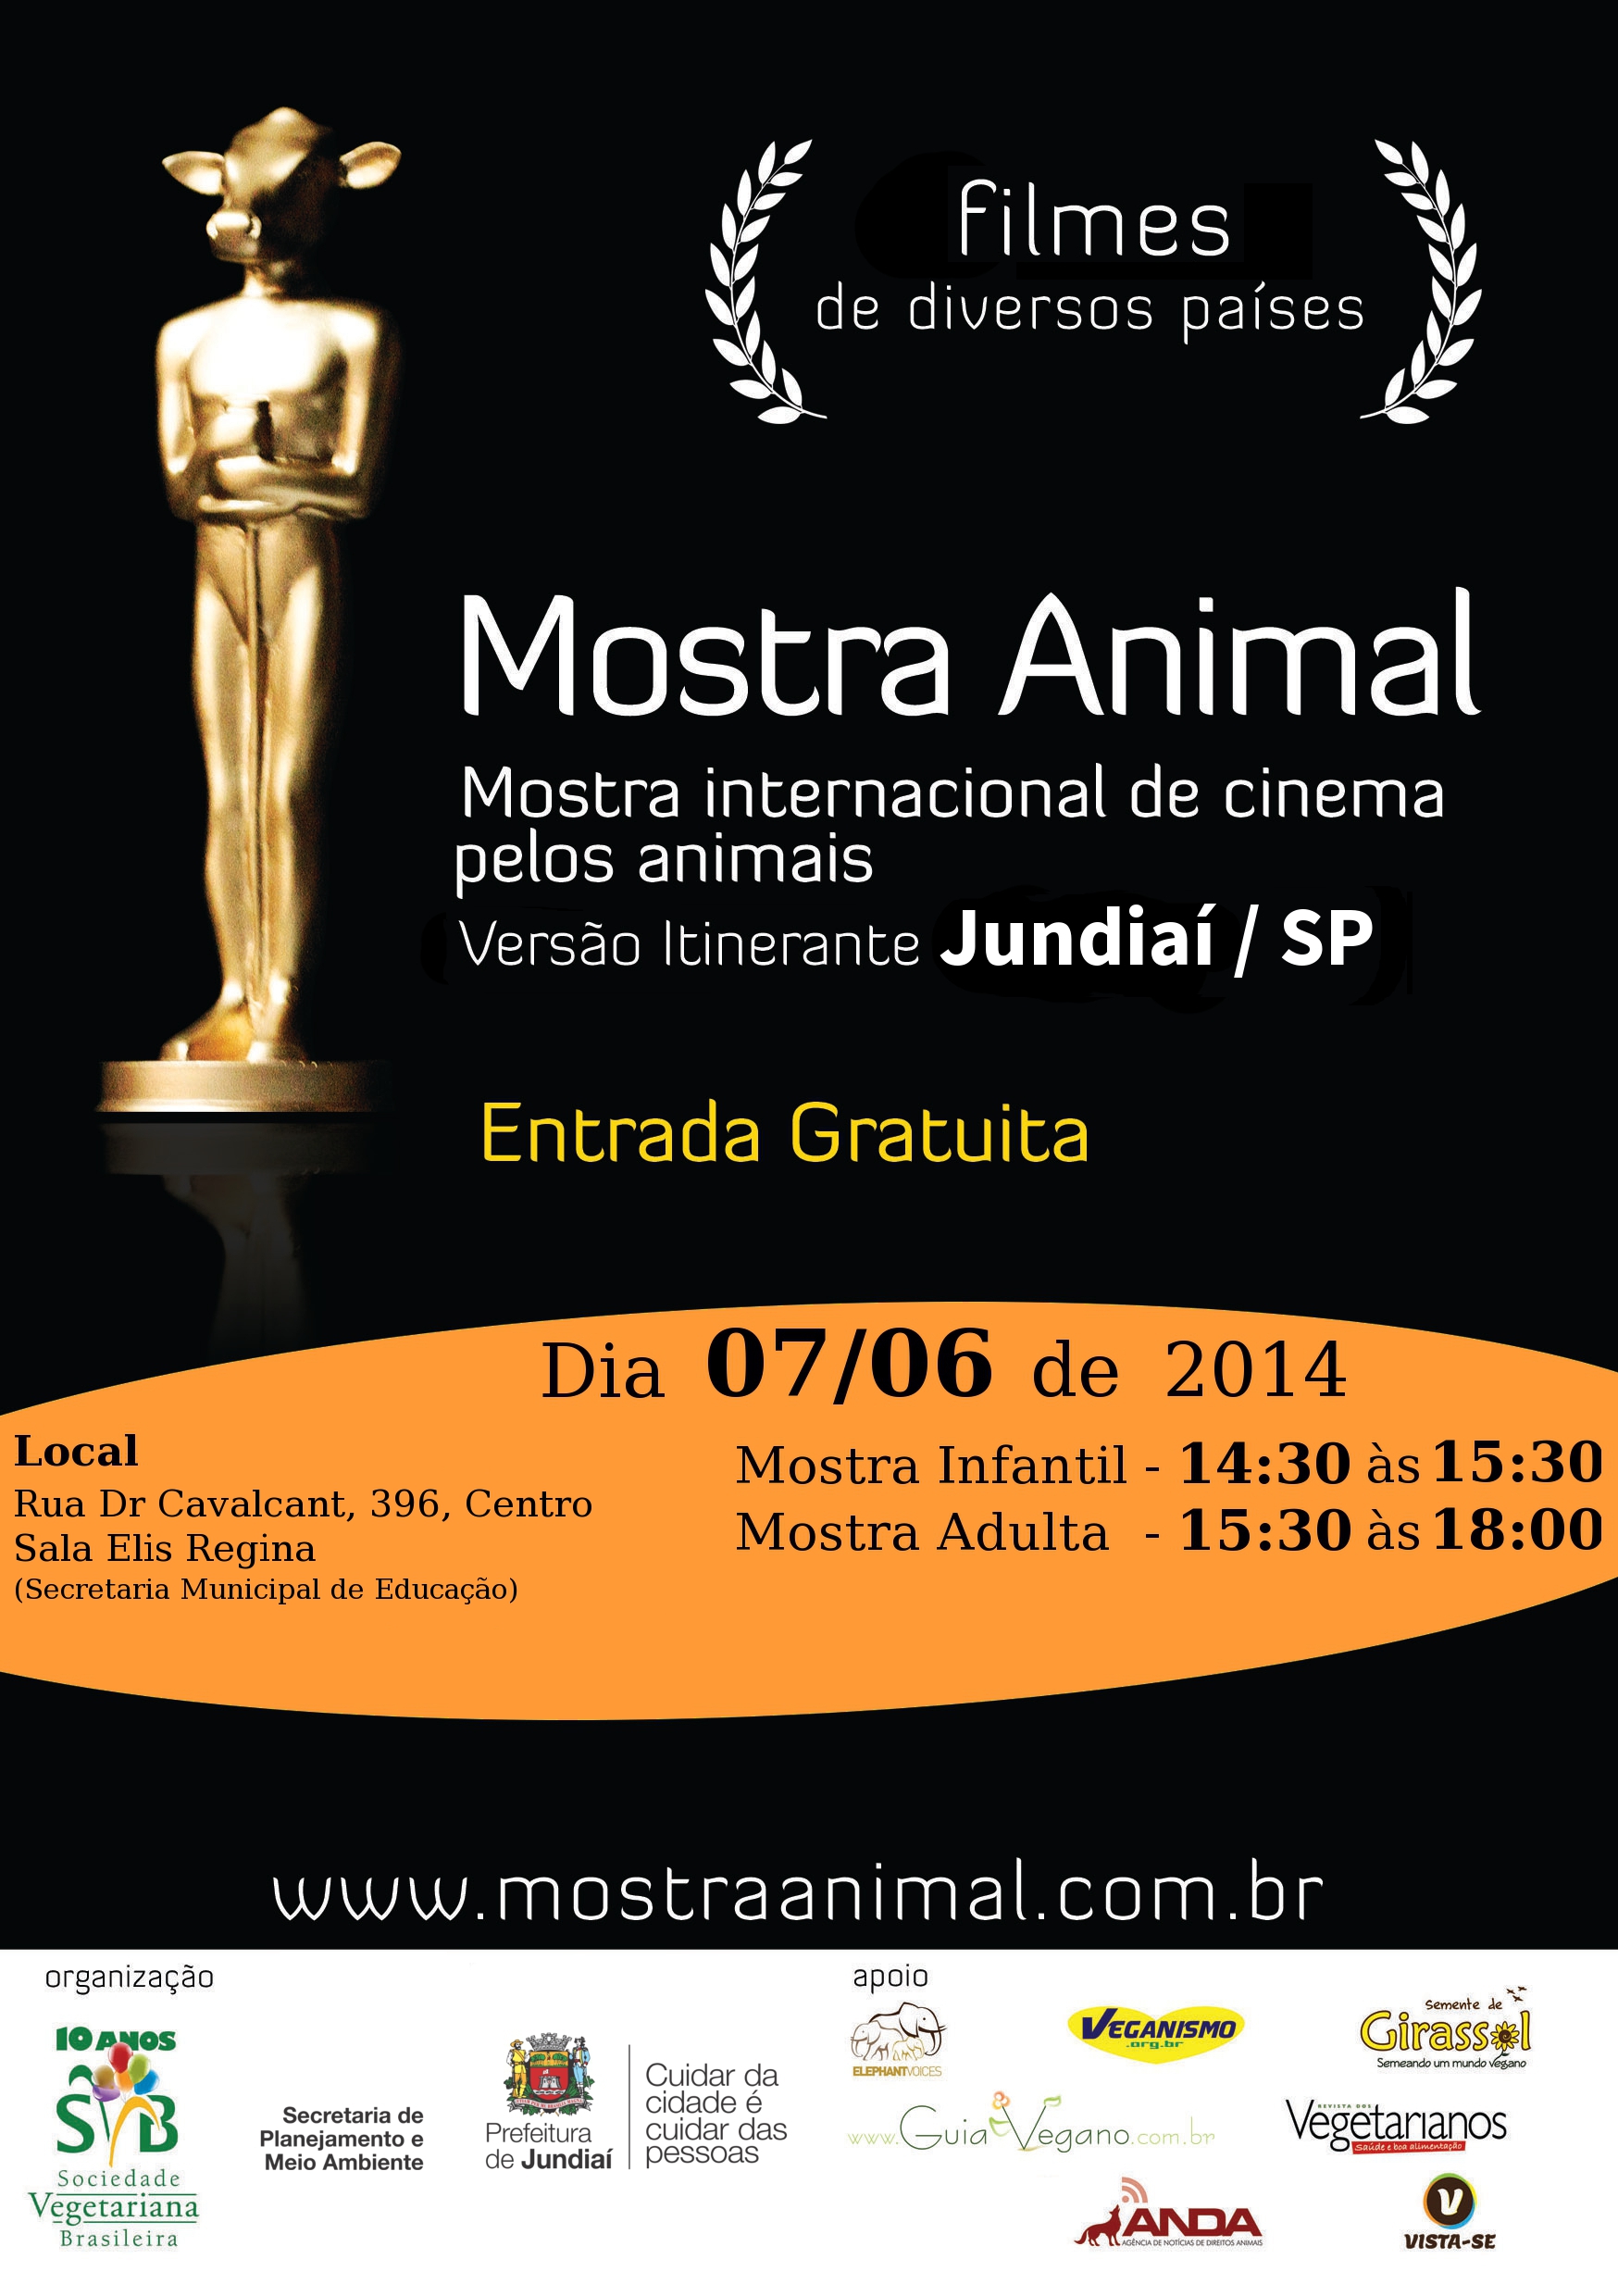 Mostra internacional de cinema pelos animais em Salvador